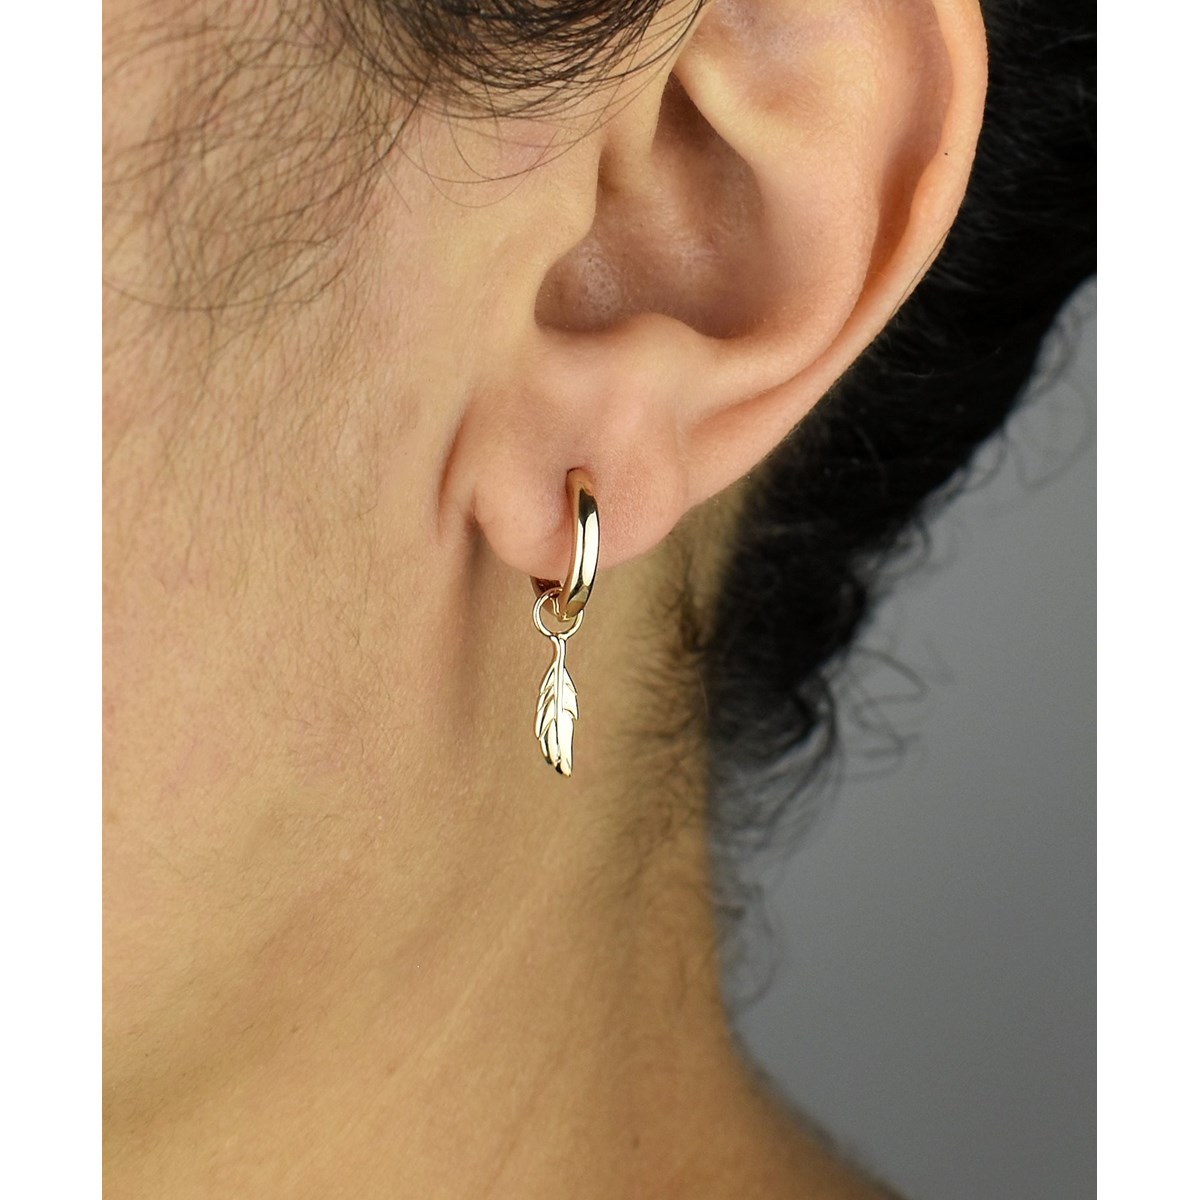 Boucles d'oreilles Mini Créoles plume pendante Plaqué or 750 3 microns - vue 3